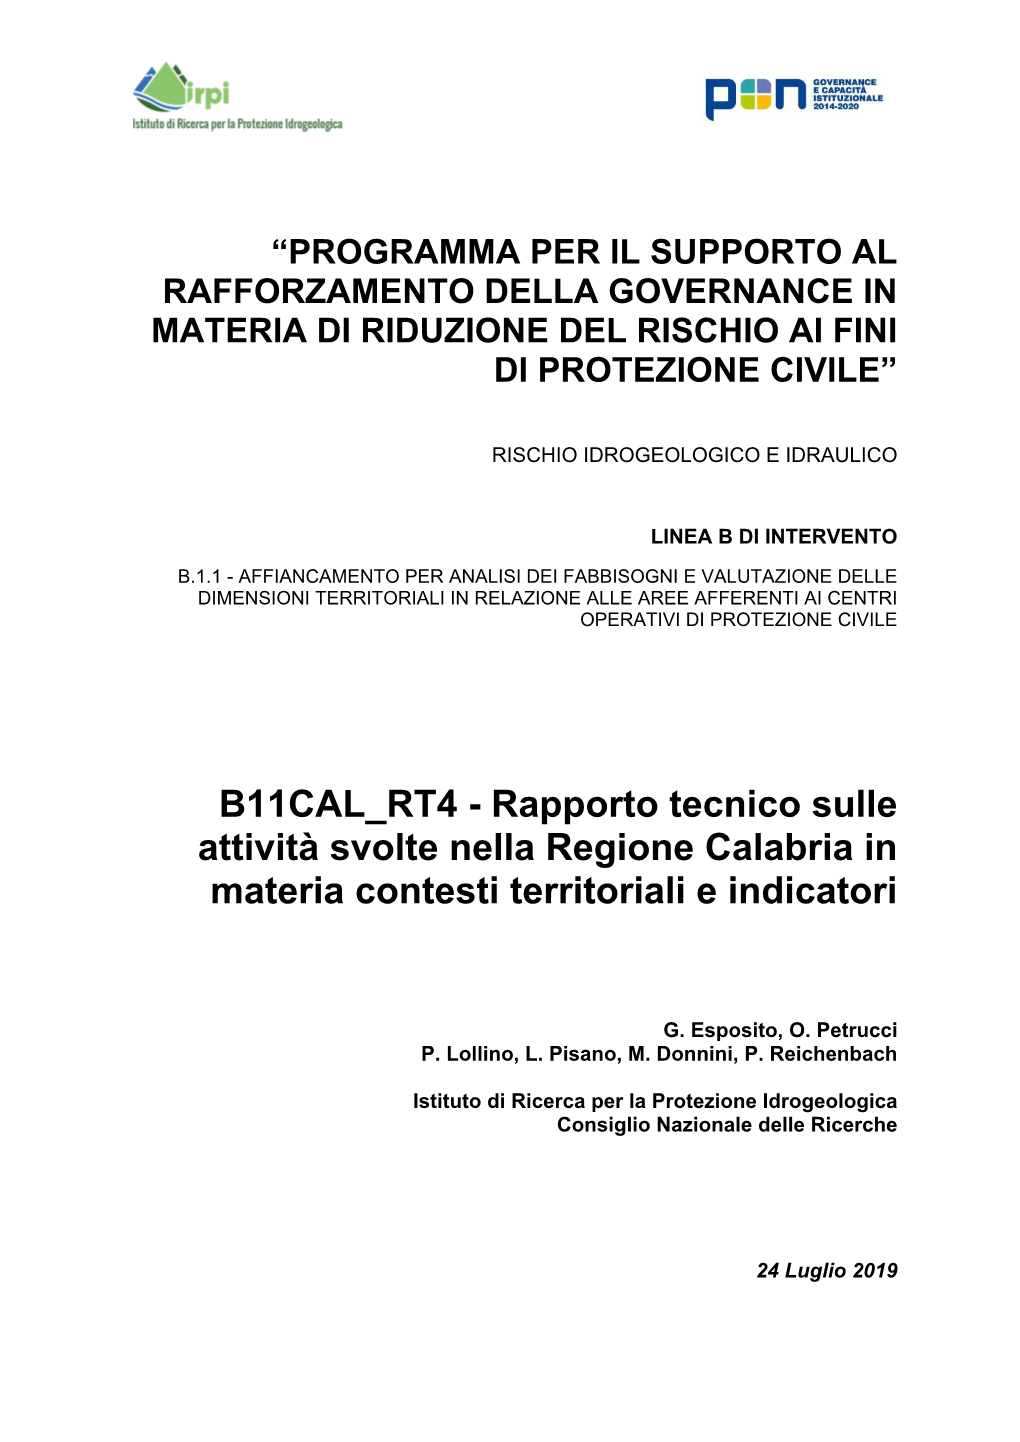 Rapporto Tecnico Sulle Attività Svolte Nella Regione Calabria in Materia Contesti Territoriali E Indicatori